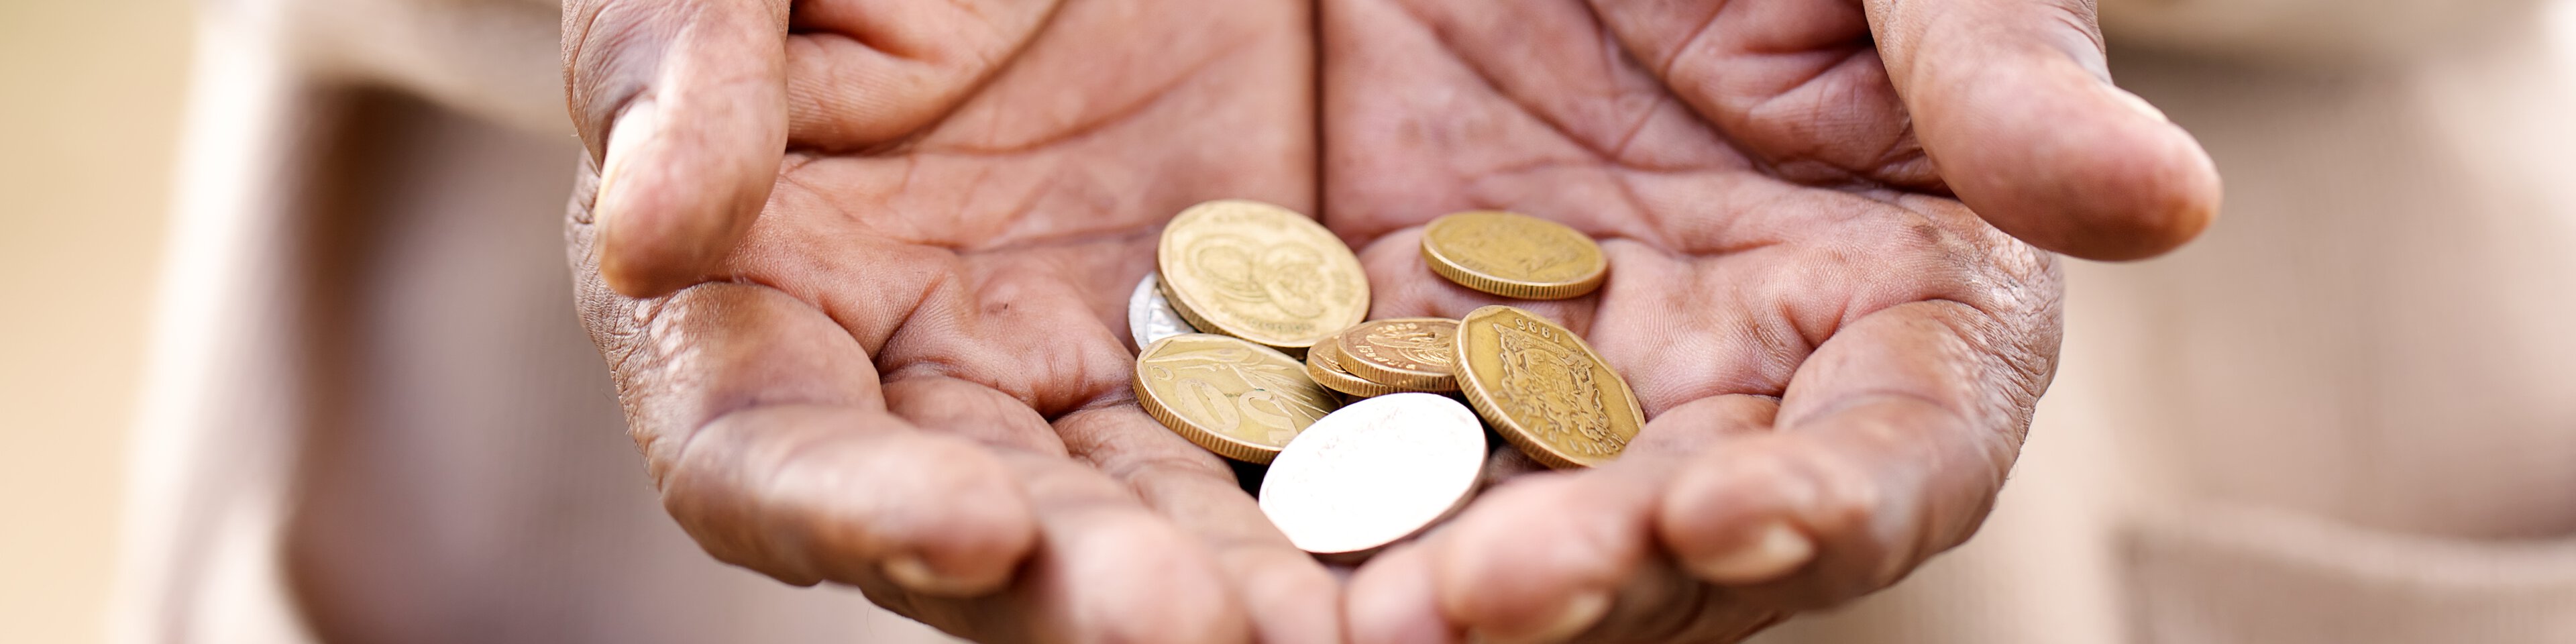 Münzen in den Händen einer älteren Dame | © Nolte Lourens - Fotolia